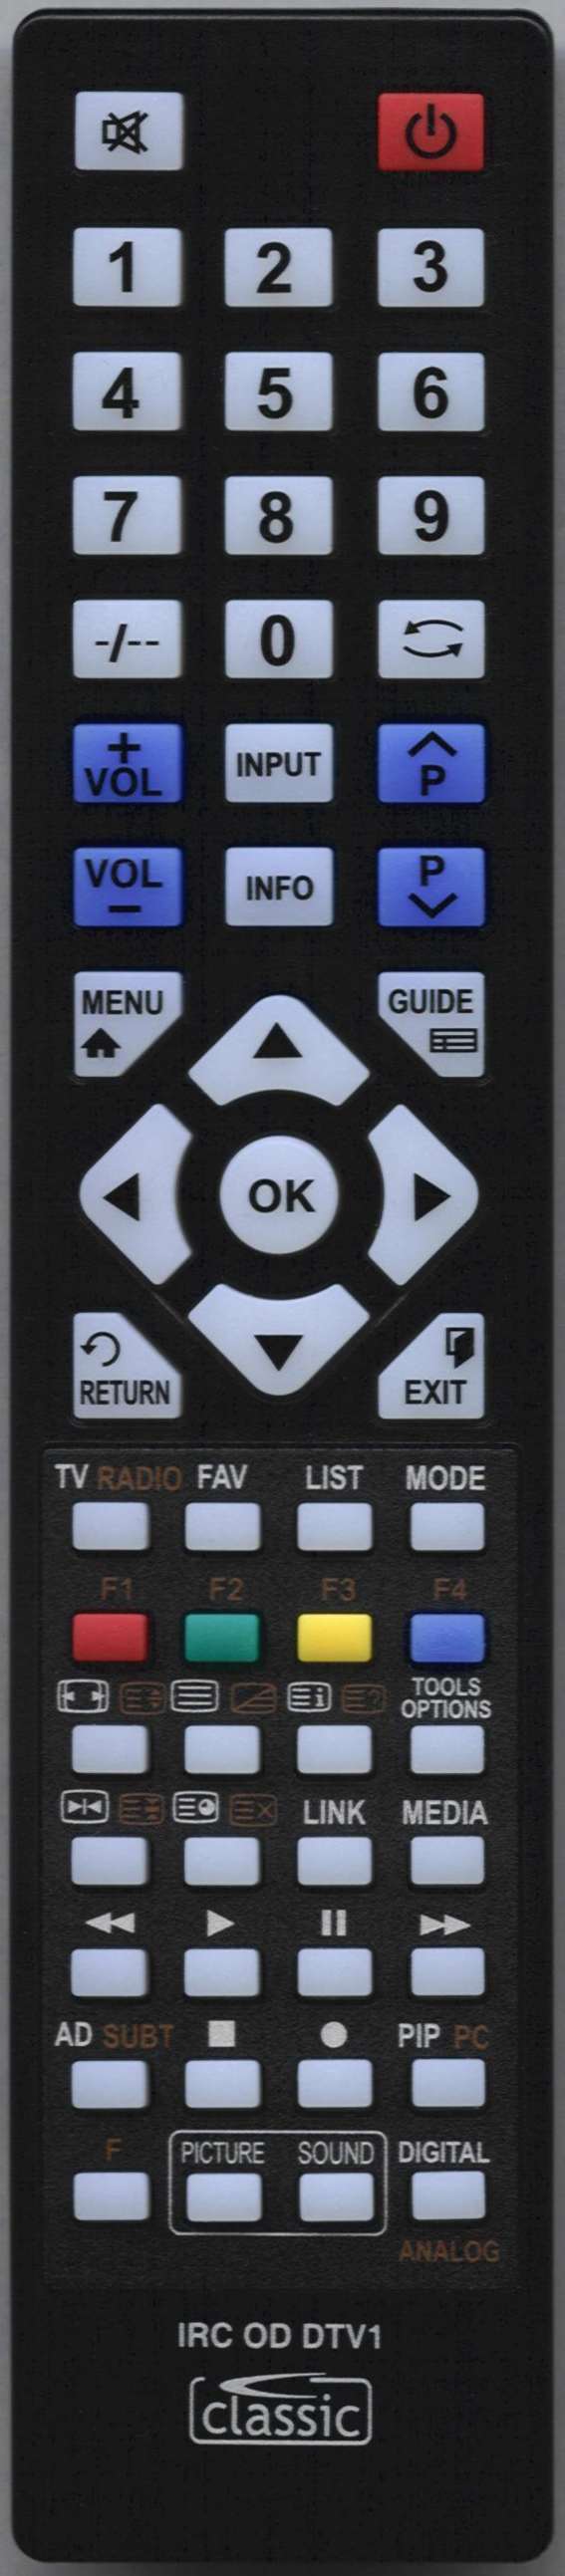 LUXOR 10054300 Remote Control Alternative